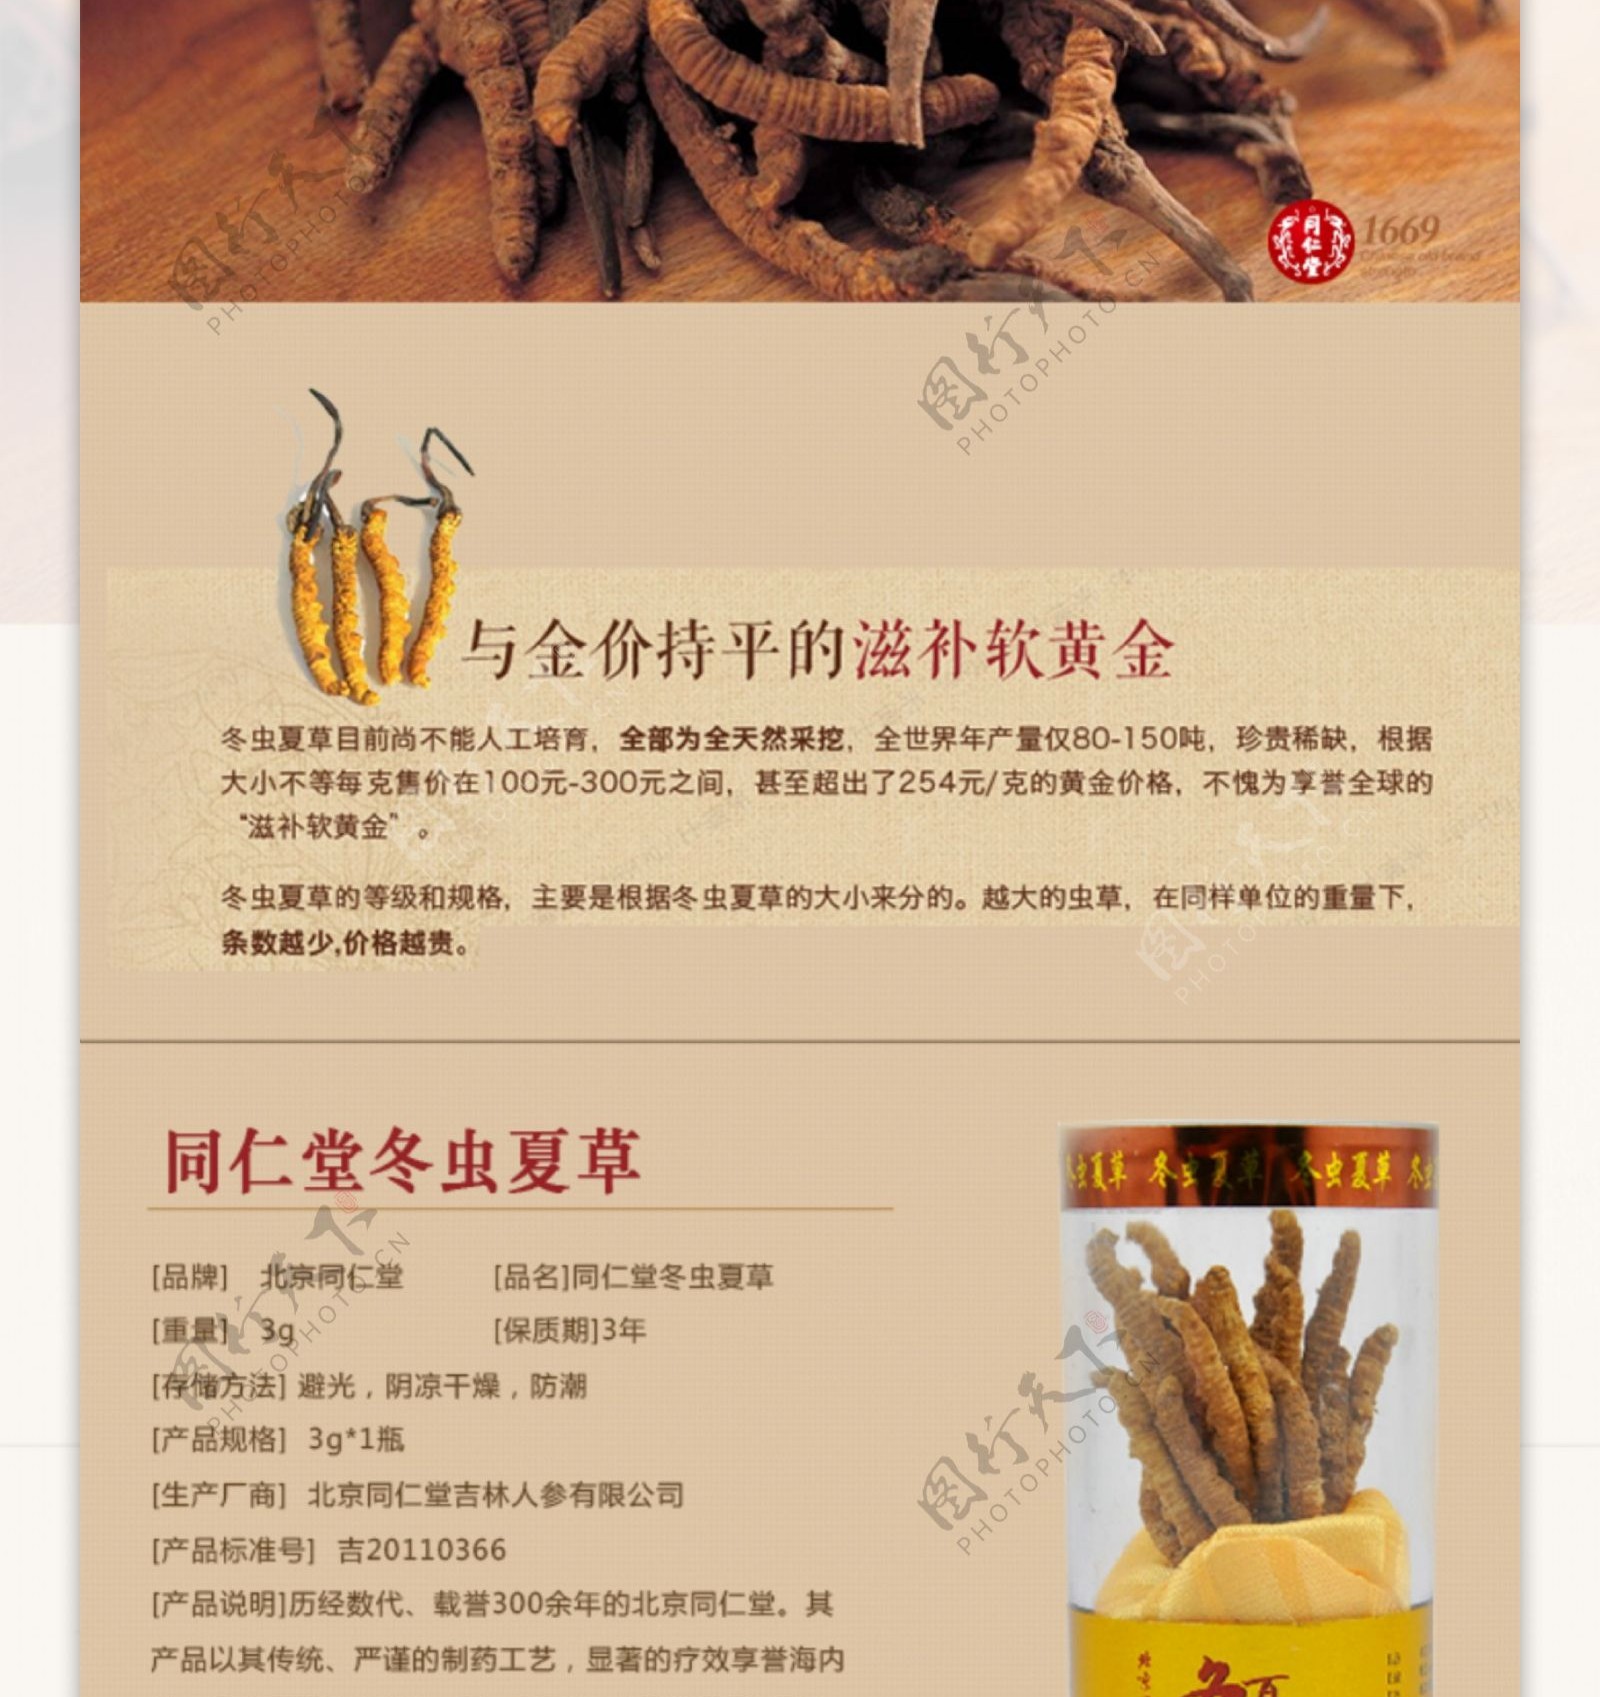 中国风产品详情页图片